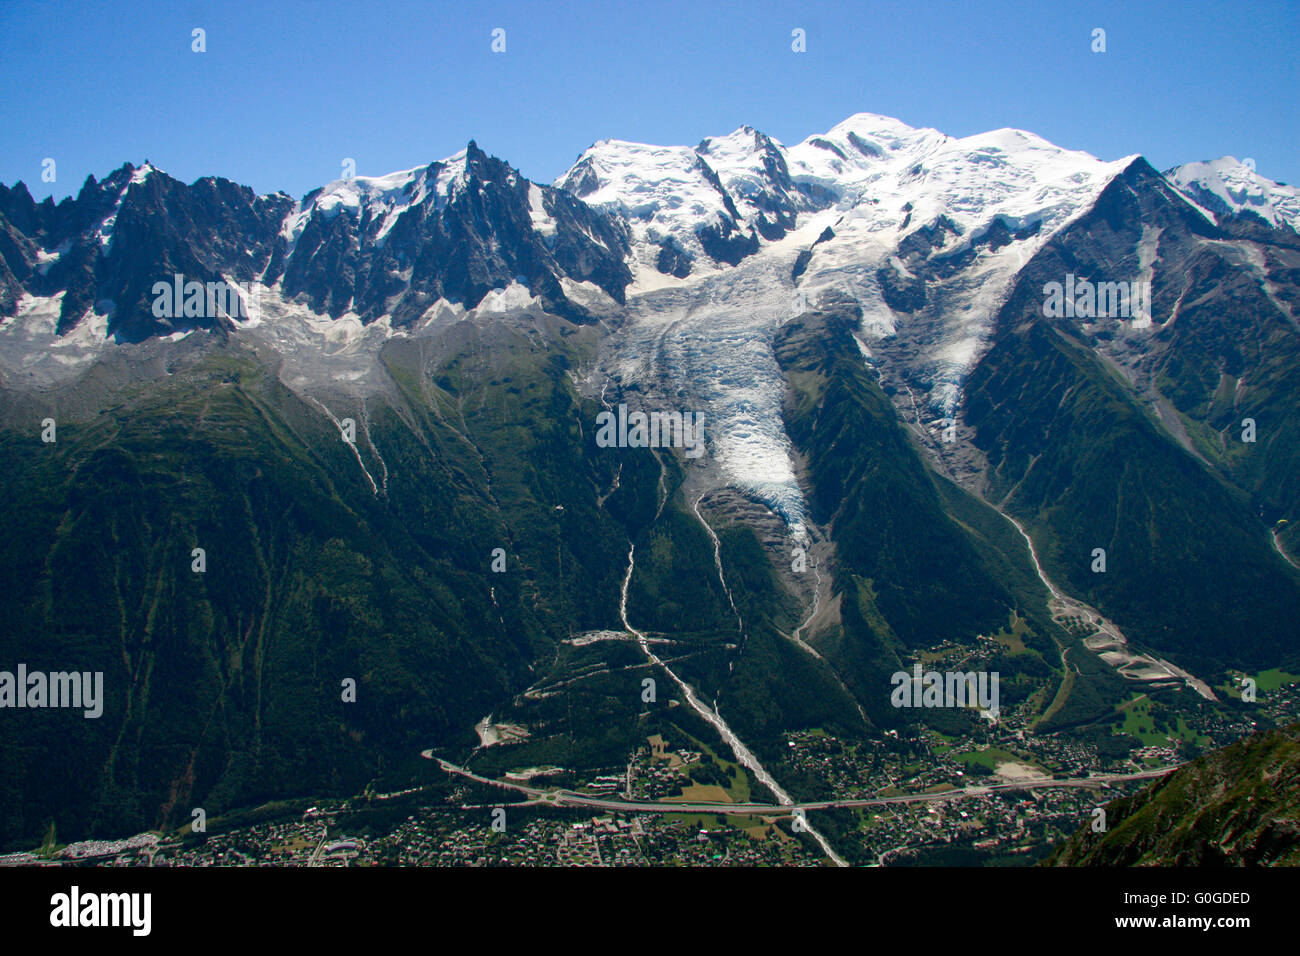 Mont Blanc-Massiv u.a. mit der Aiguille du Midi und dem Glacier des Bosson, Chamonix Frankreich. Foto Stock